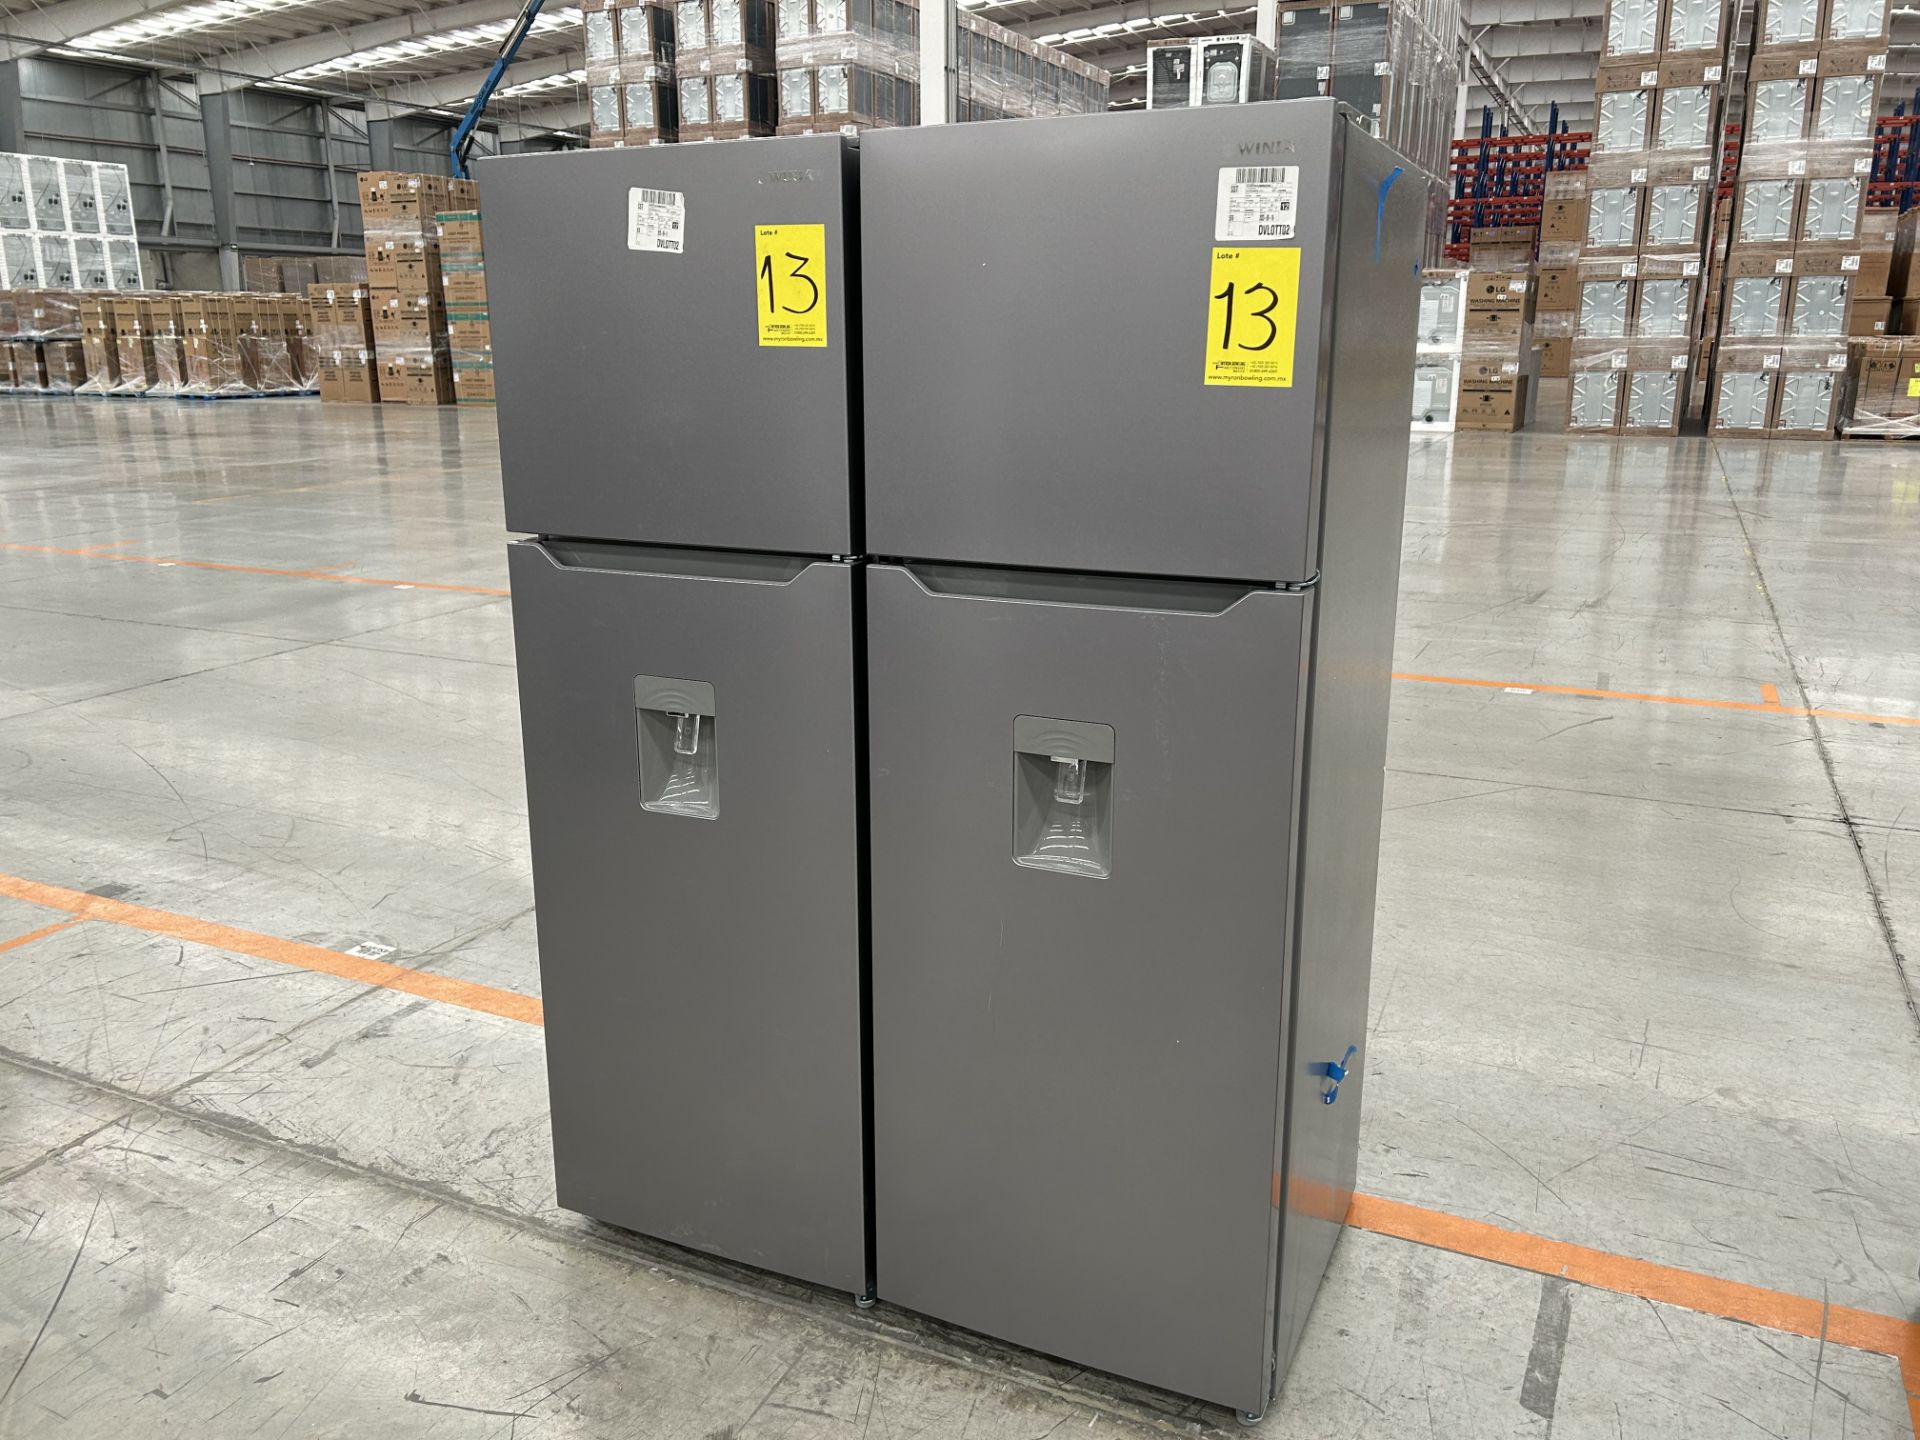 Lote de 2 Refrigeradores contiene: 1 Refrigerador con dispensador de agua Marca WINIA, Modelo WRT12 - Image 2 of 6